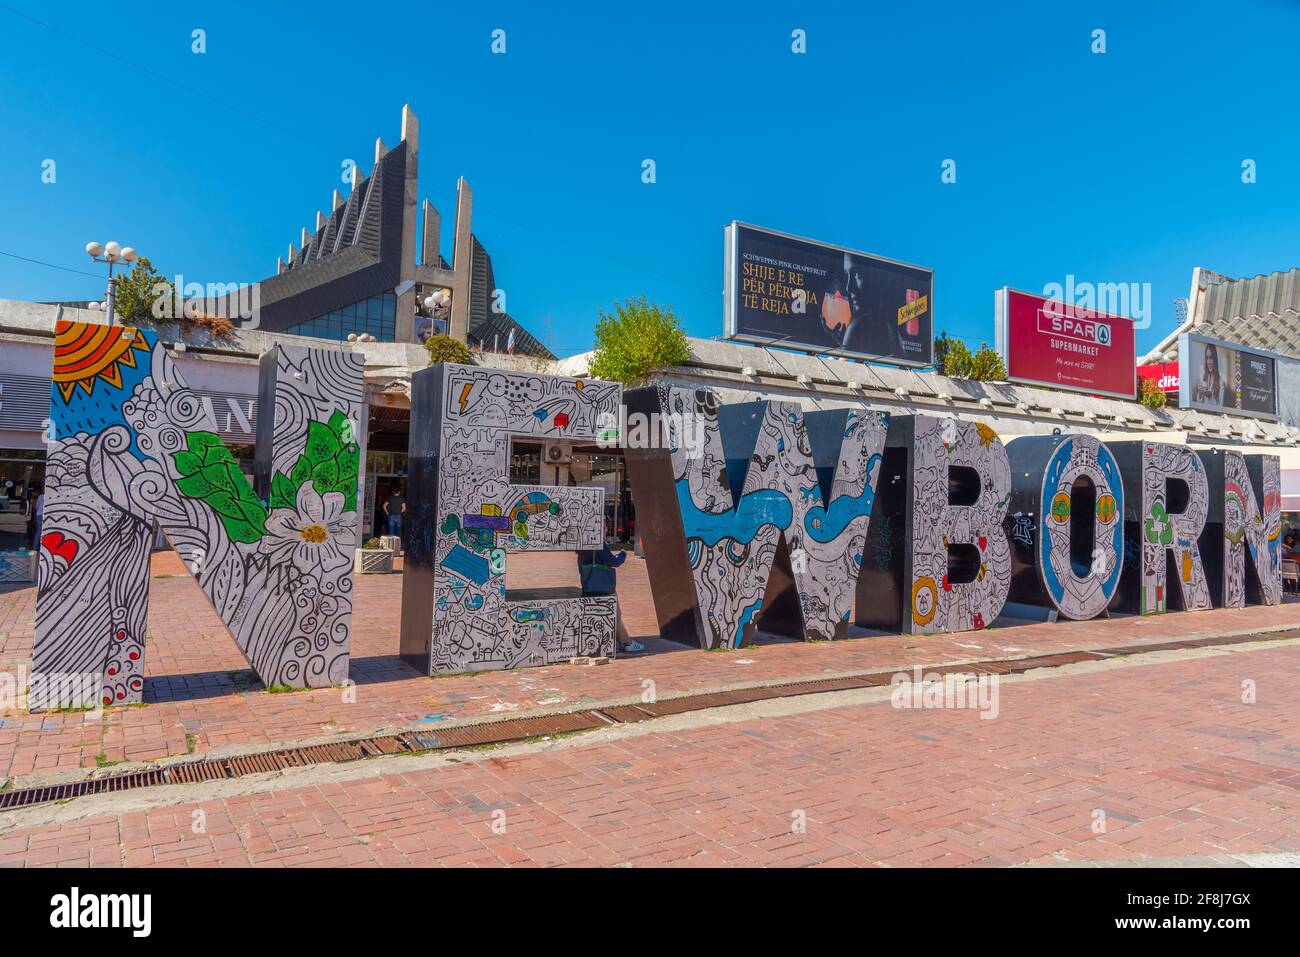 PRISHTINA, KOSOVO, 16. SEPTEMBER 2019: Neugeborenes Denkmal in Prishtina, Kosovo Stockfoto